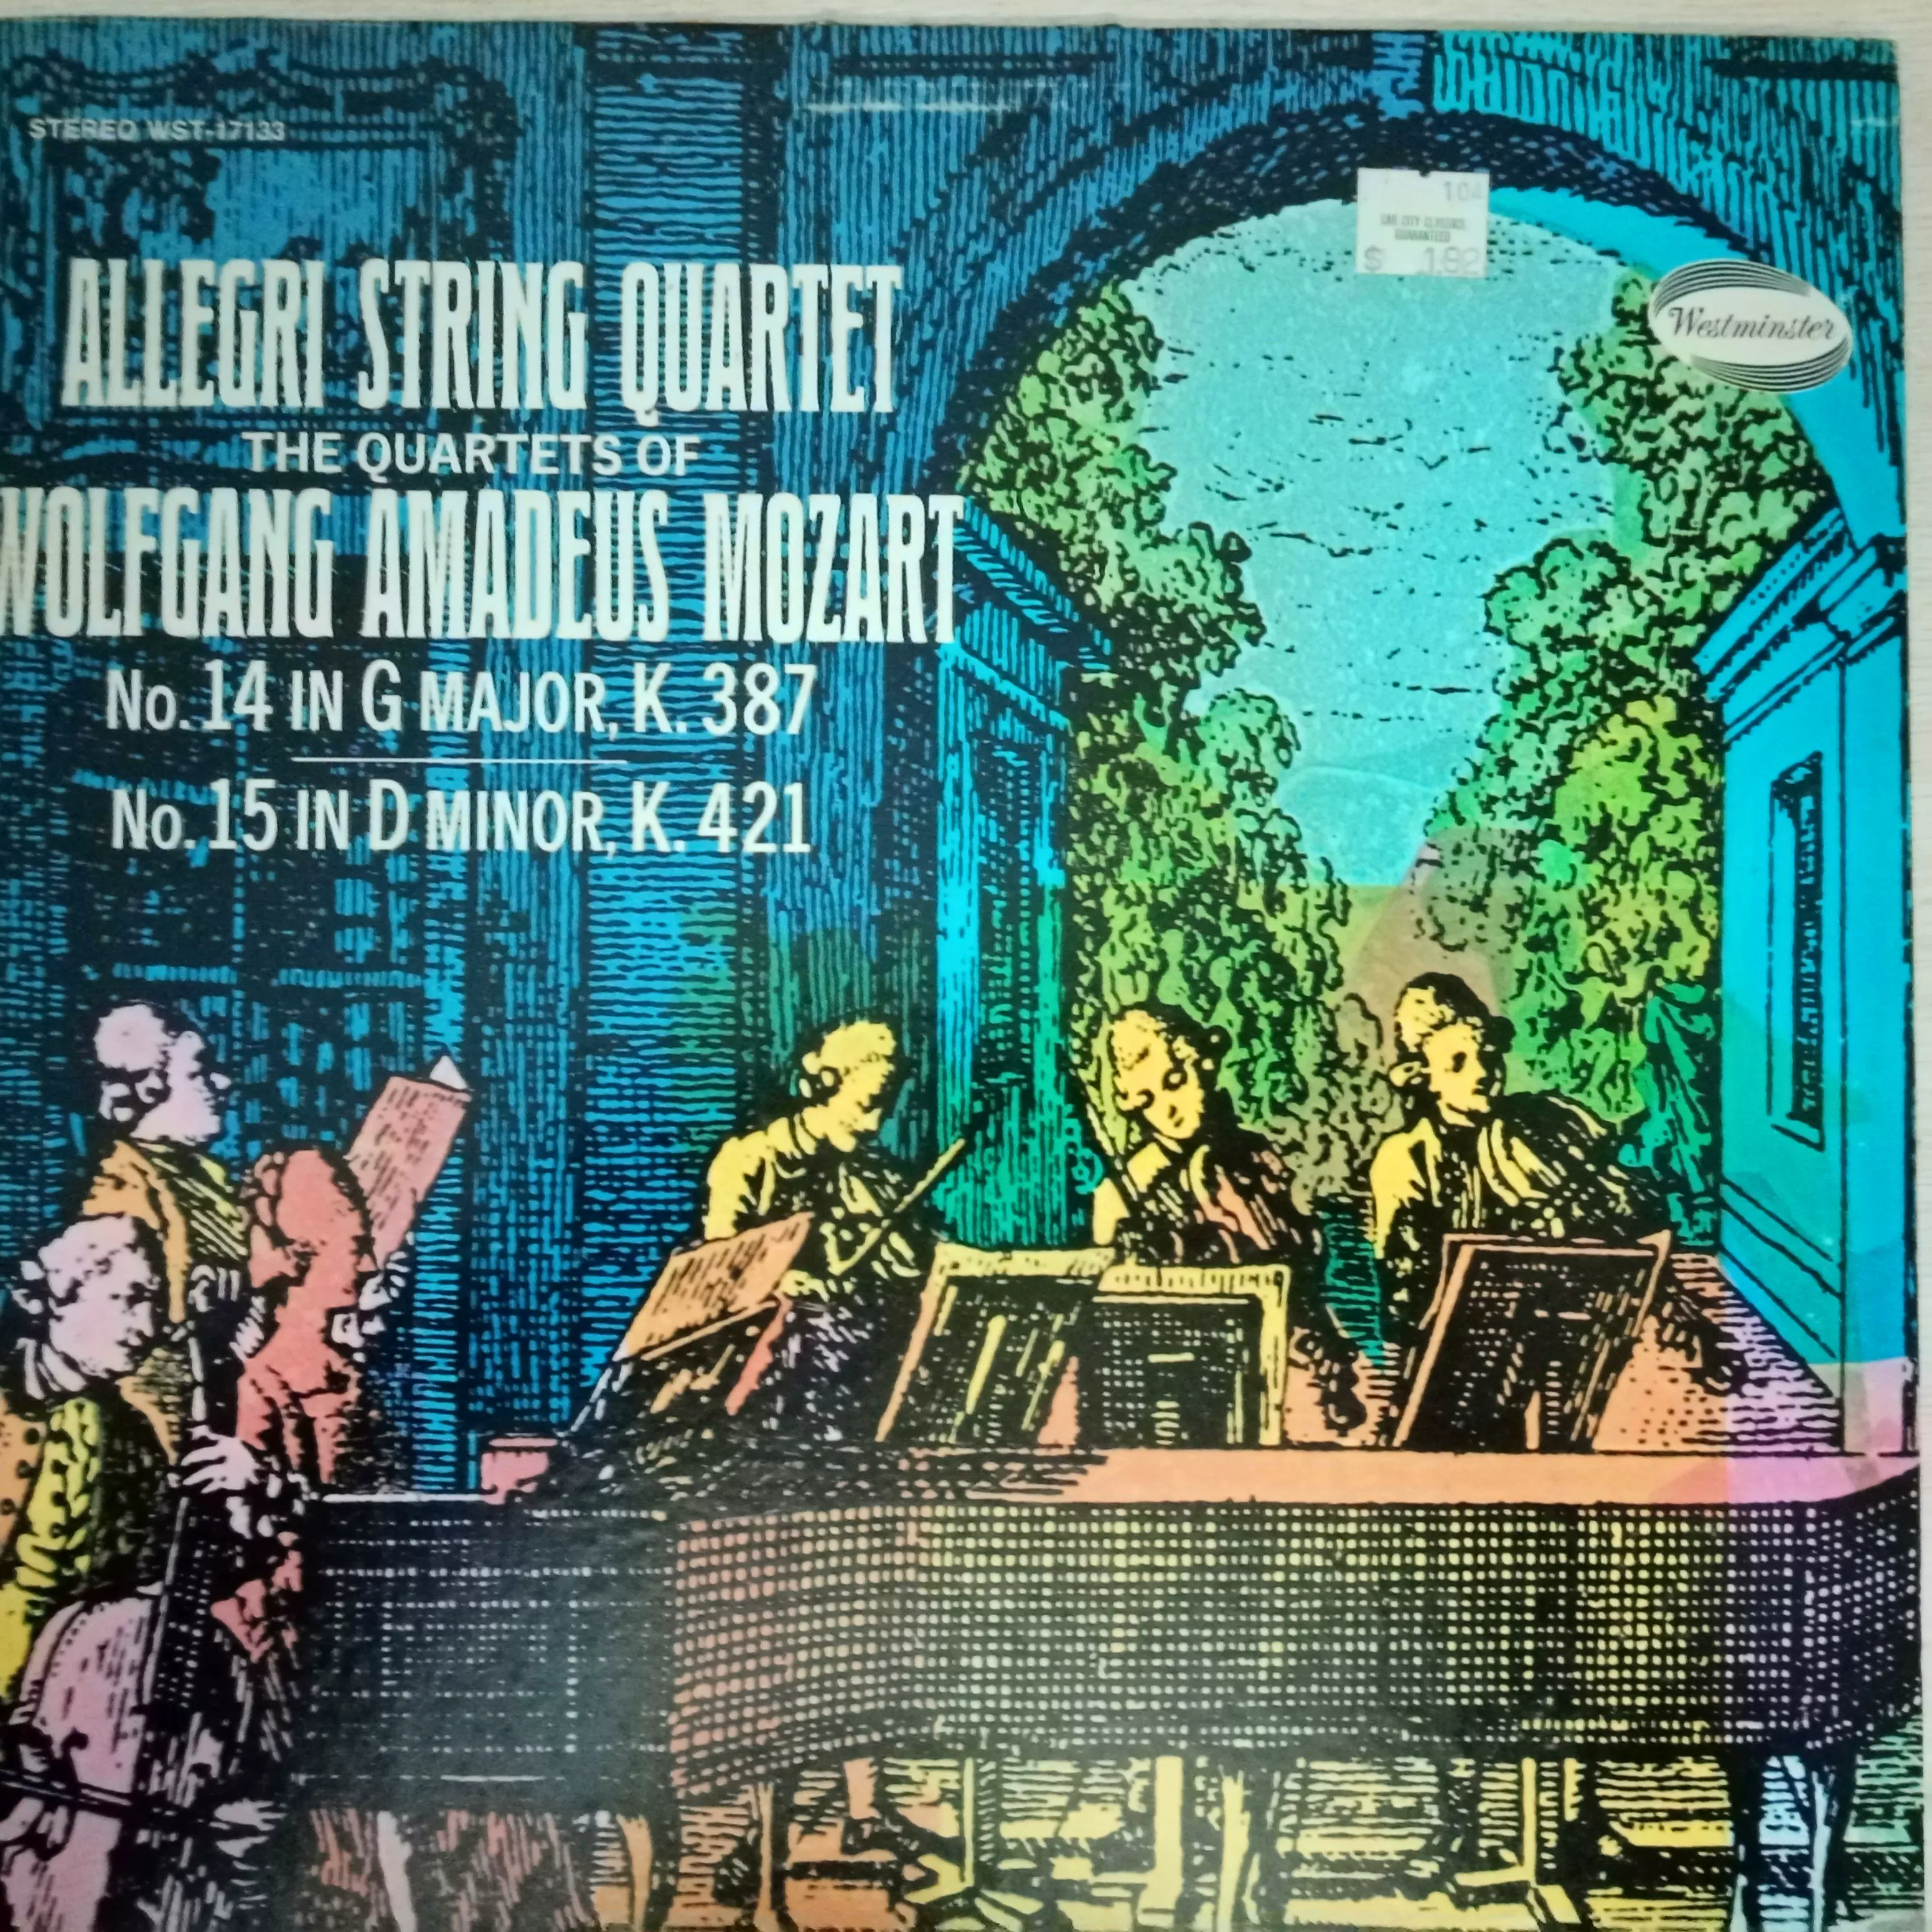 西敏寺立体声品新盘好Allegri String Quartet演奏莫扎特LP黑胶-Taobao